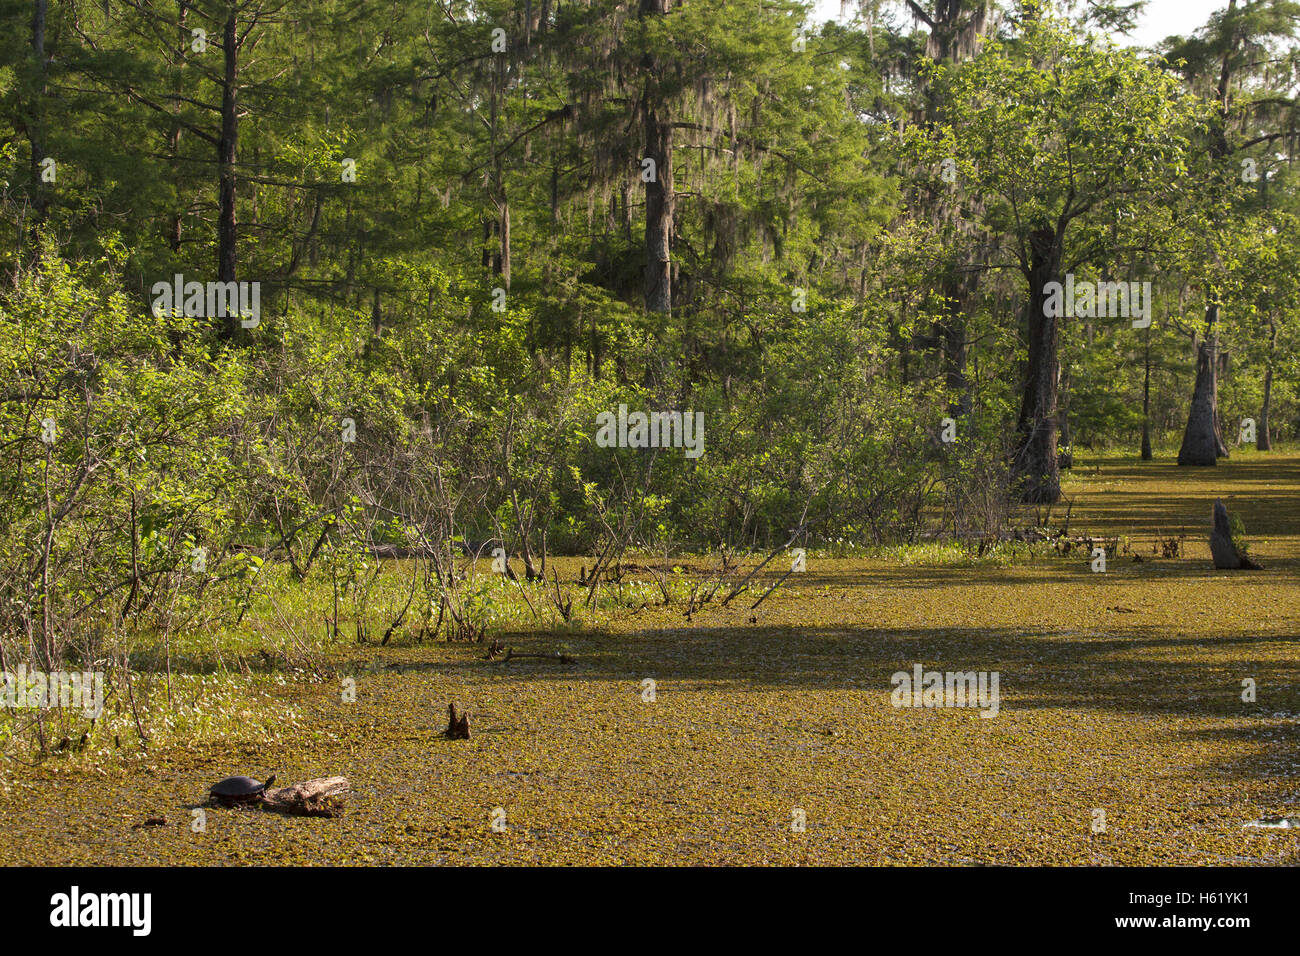 Louisiana bayou, acqua superficie coperta da Salvinia, una pianta invasiva. La tartaruga in primo piano. Foto Stock